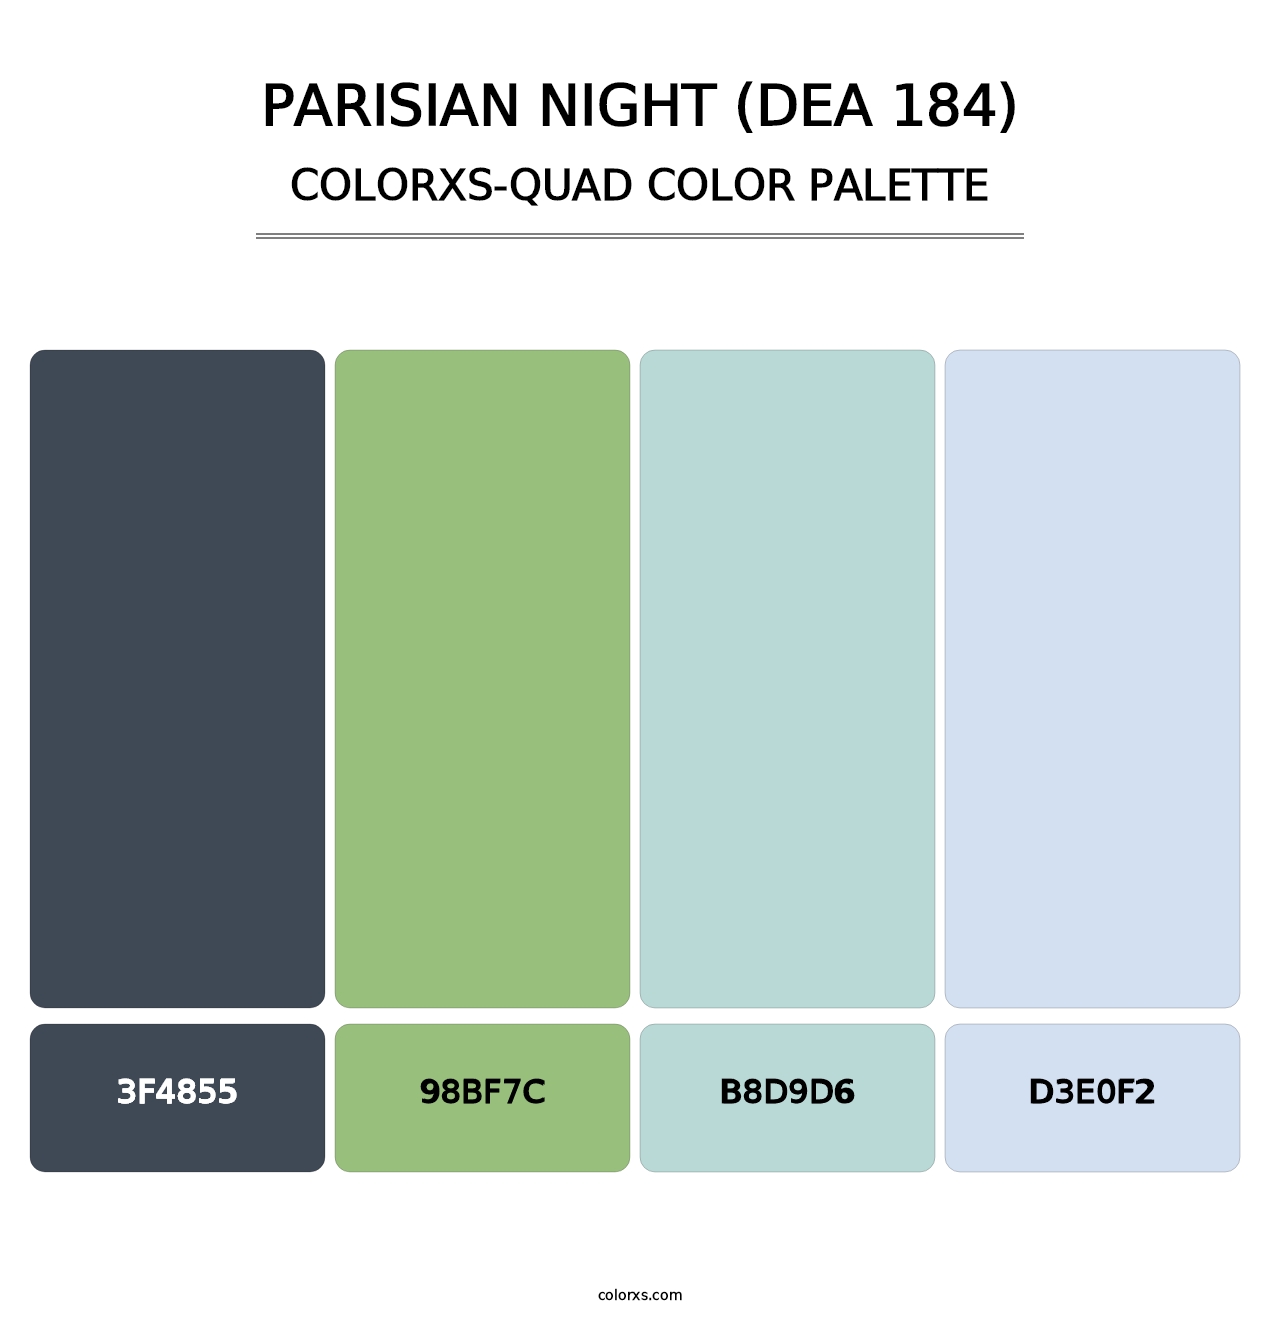 Parisian Night (DEA 184) - Colorxs Quad Palette